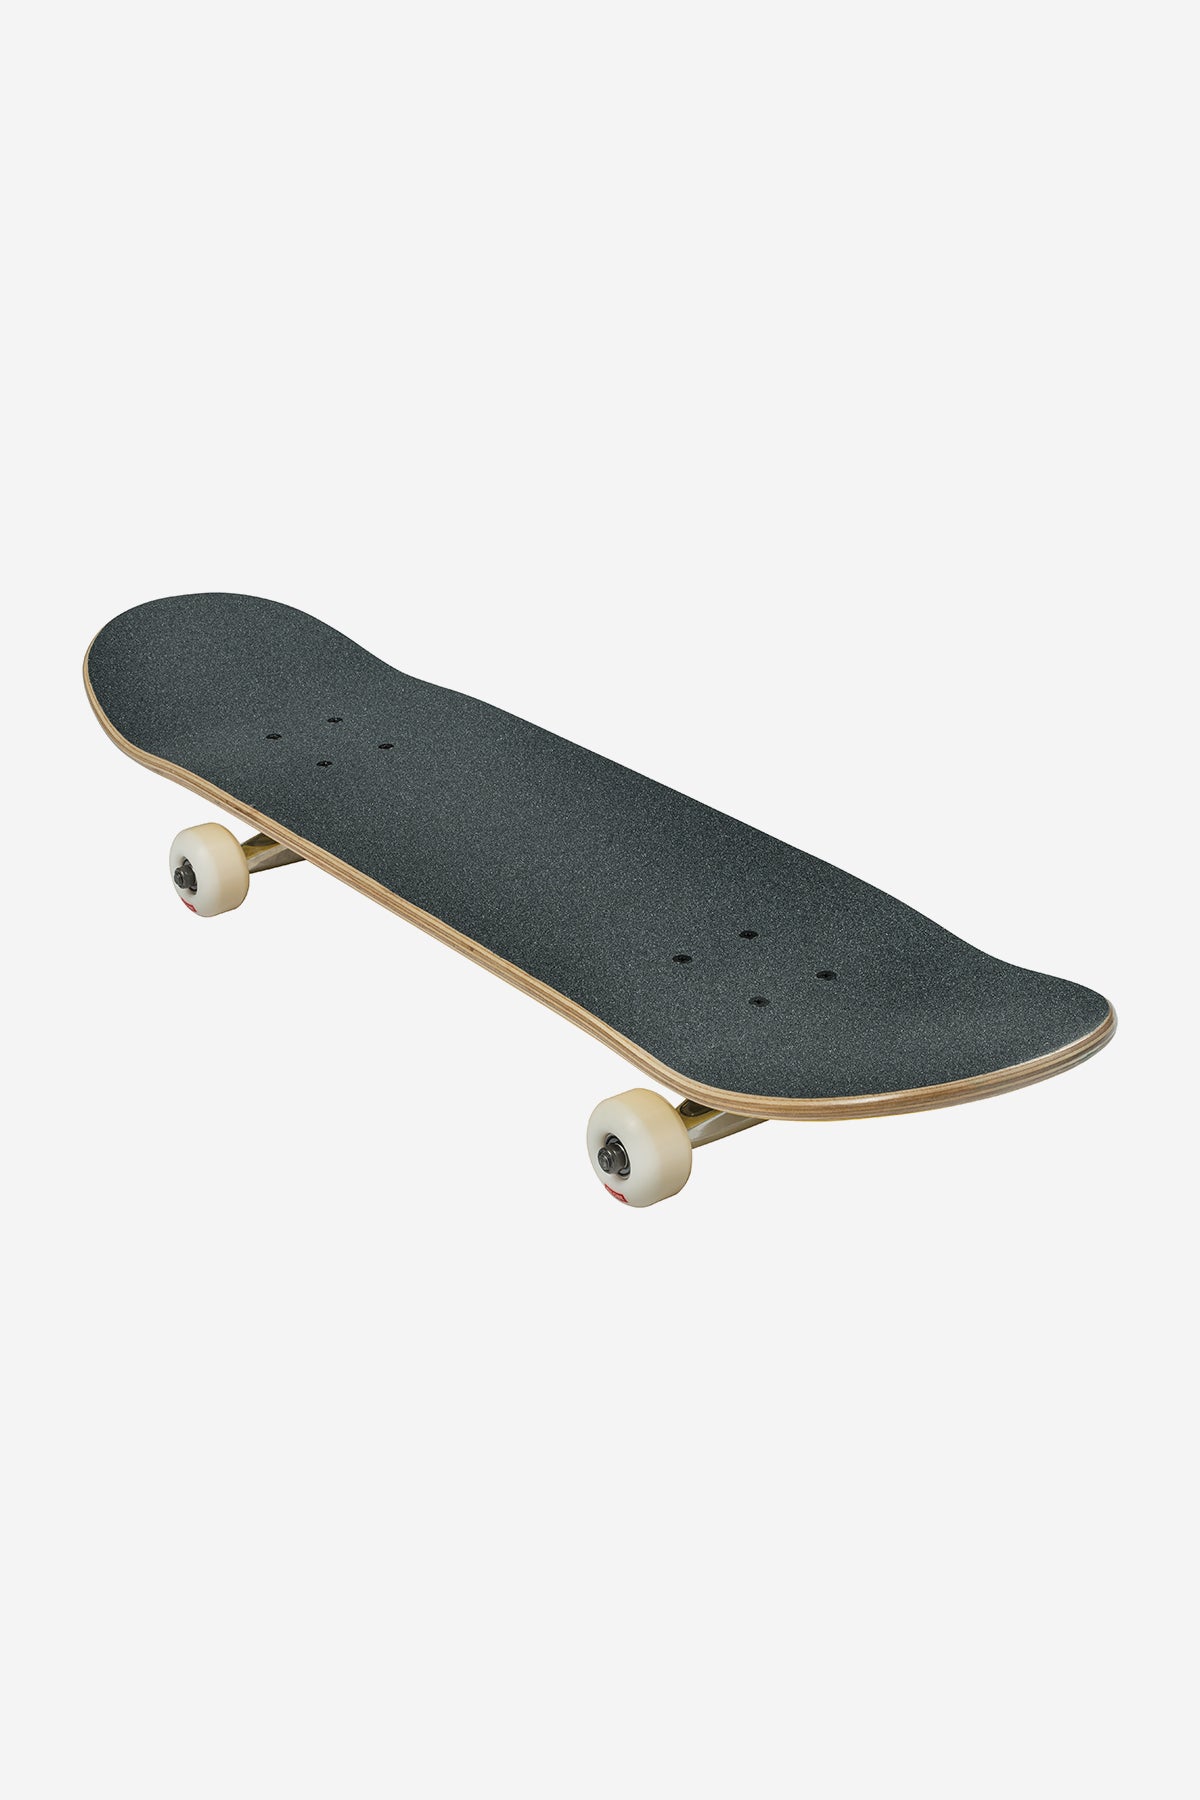 Globe - Goodstock - Noir - 8.125" complet Skateboard